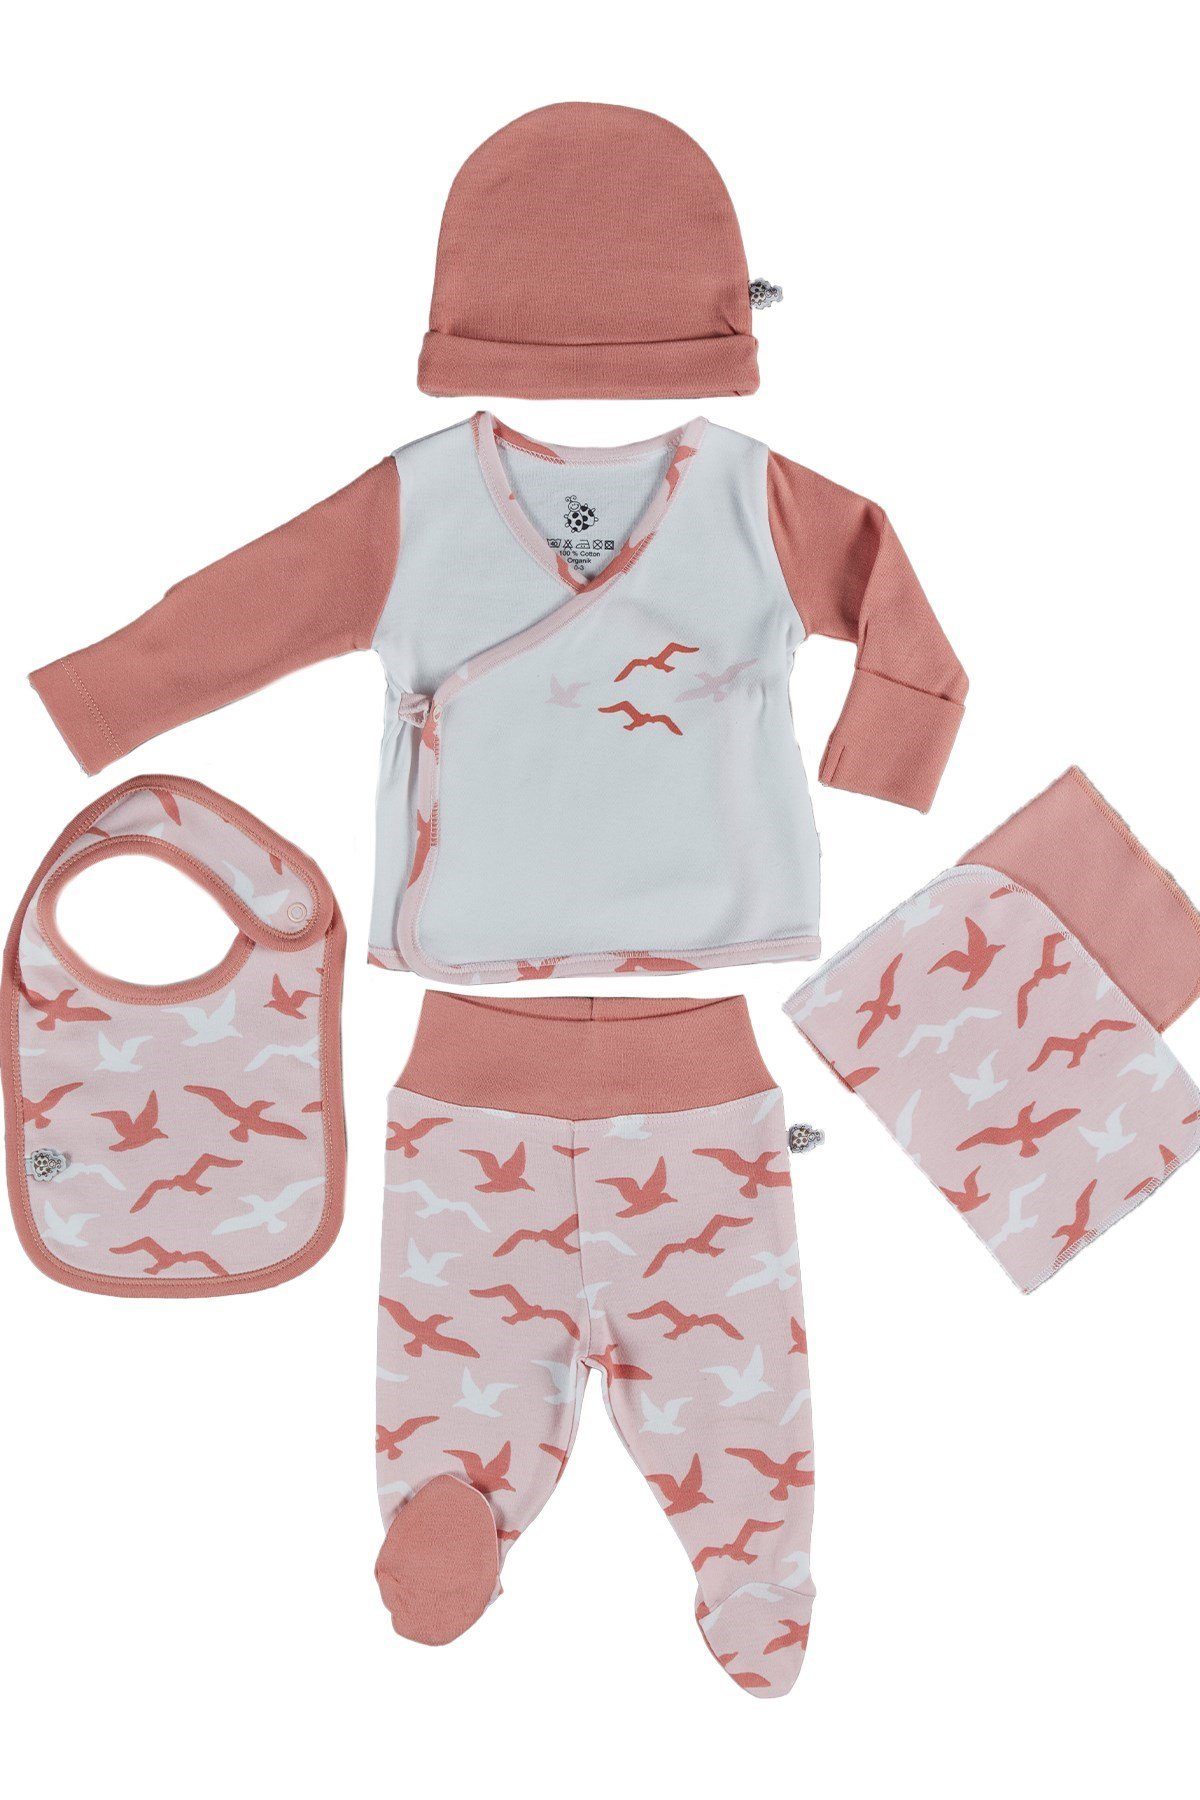 Baumwolle Bio TURNA Lätzchen, Ecocotton Bio-Baumwolle (5-teilig) 100% süßem weiß-rosa Erstausstattungsset Baby Mütze, Design Hose, Spucktuch) Jacke, Erstausstattungspaket (Set, mit